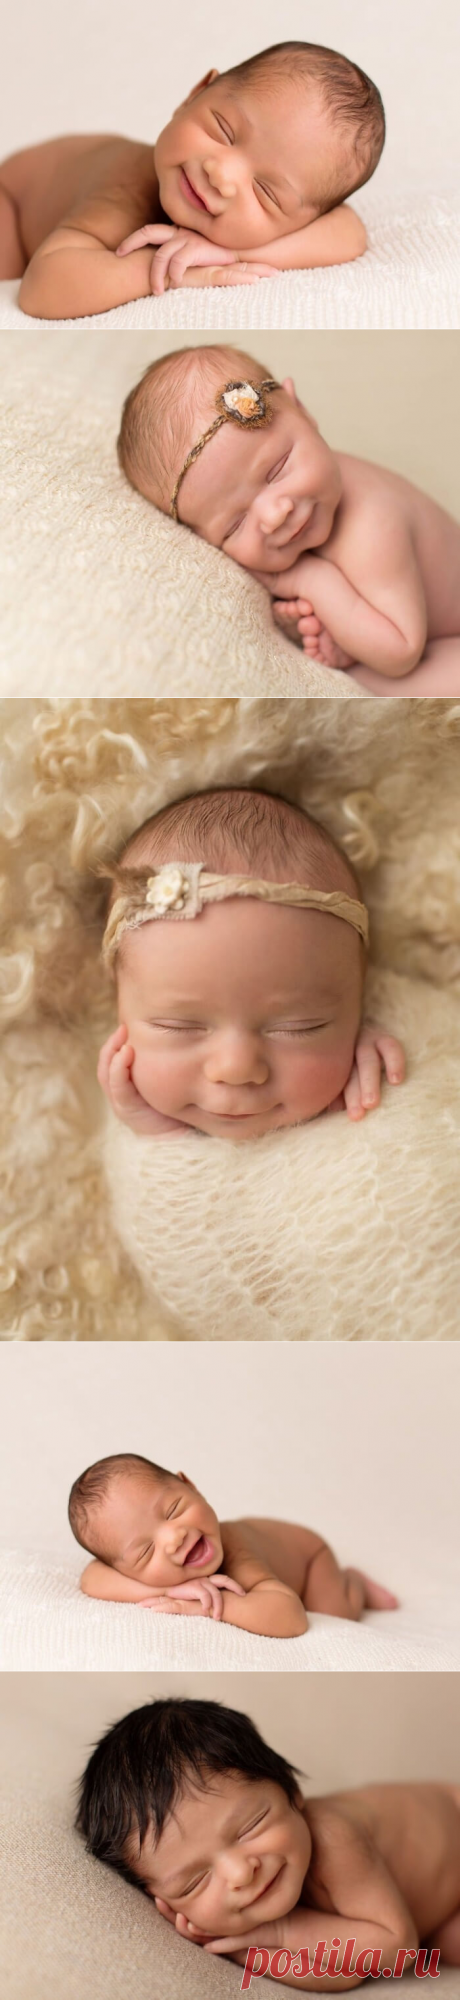 Фотограф, который ловит улыбки спящих младенцев | В темпі життя